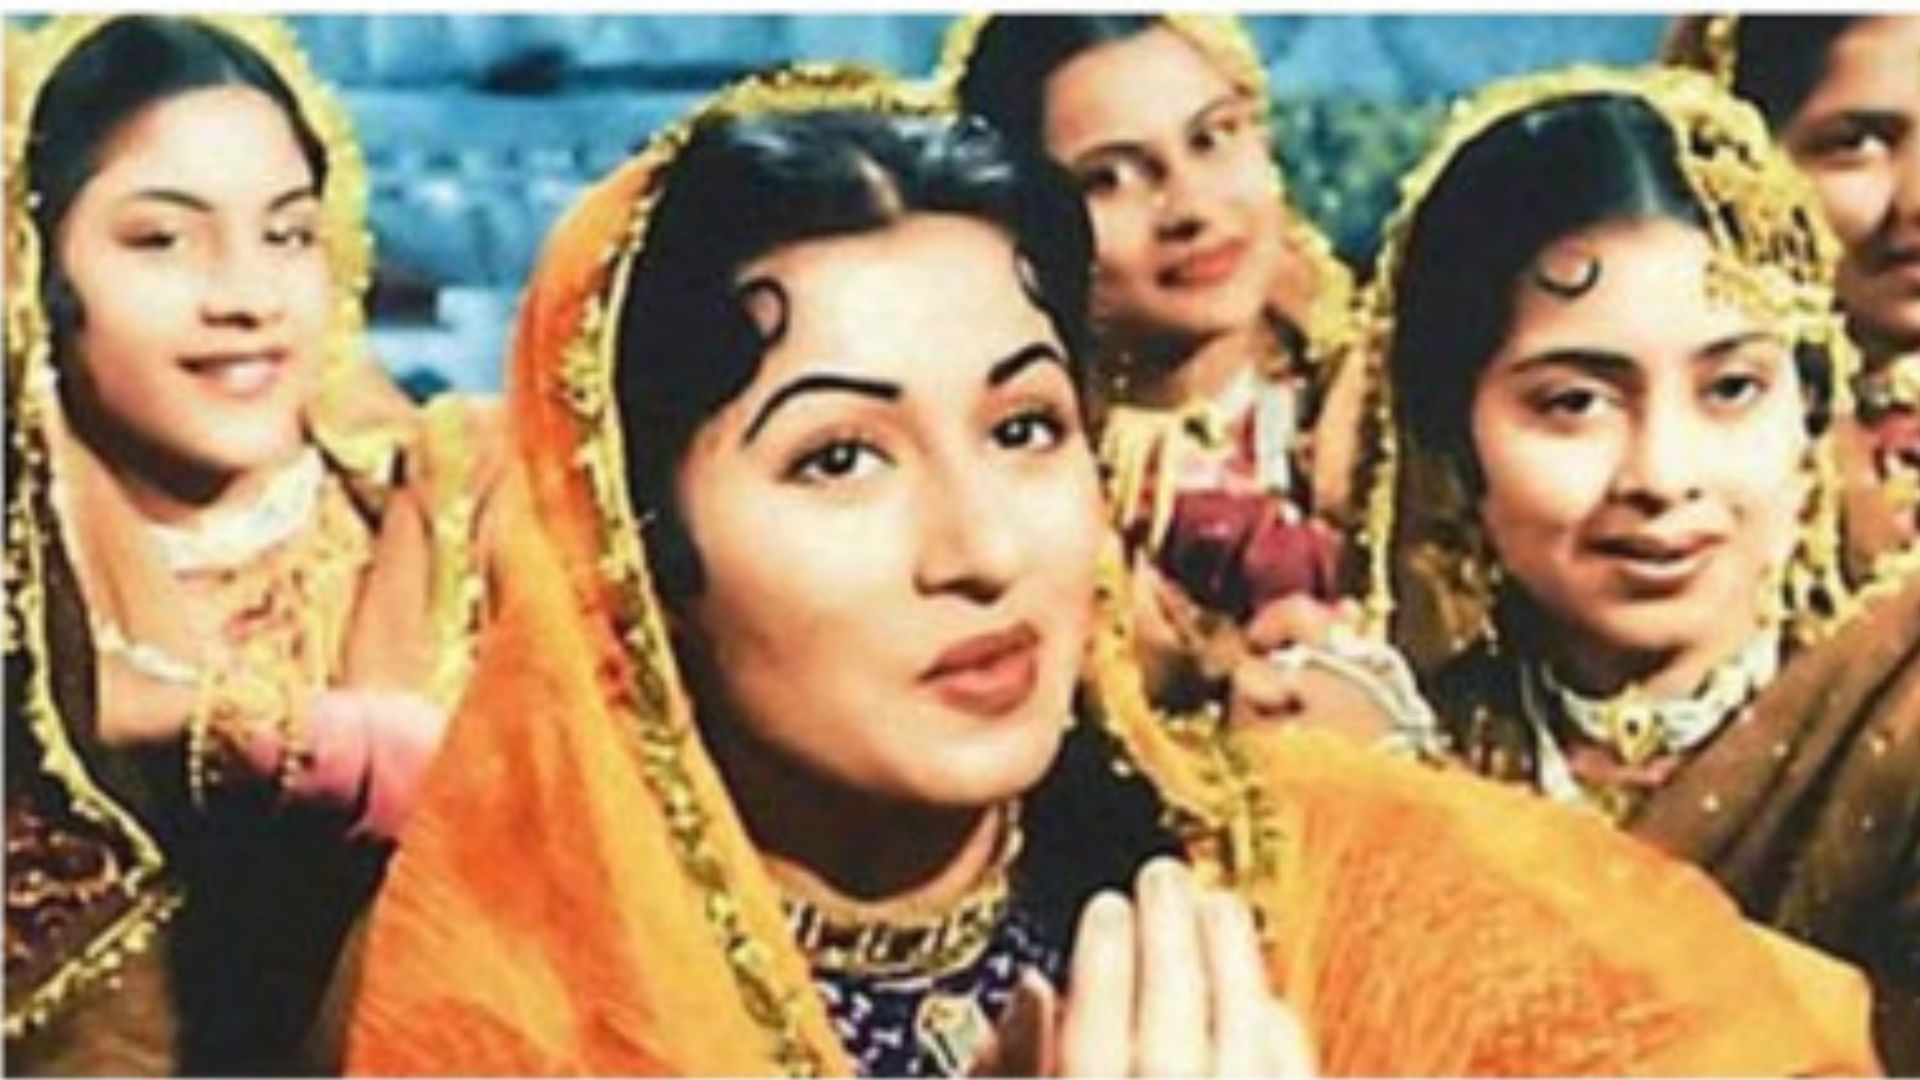 23 फरवरी का इतिहास: आज है हिंदी सिनेमा जगत की सबसे खूबसूरत अभिनेत्रियों में शुमार मधुबाला की पुण्यतिथि 